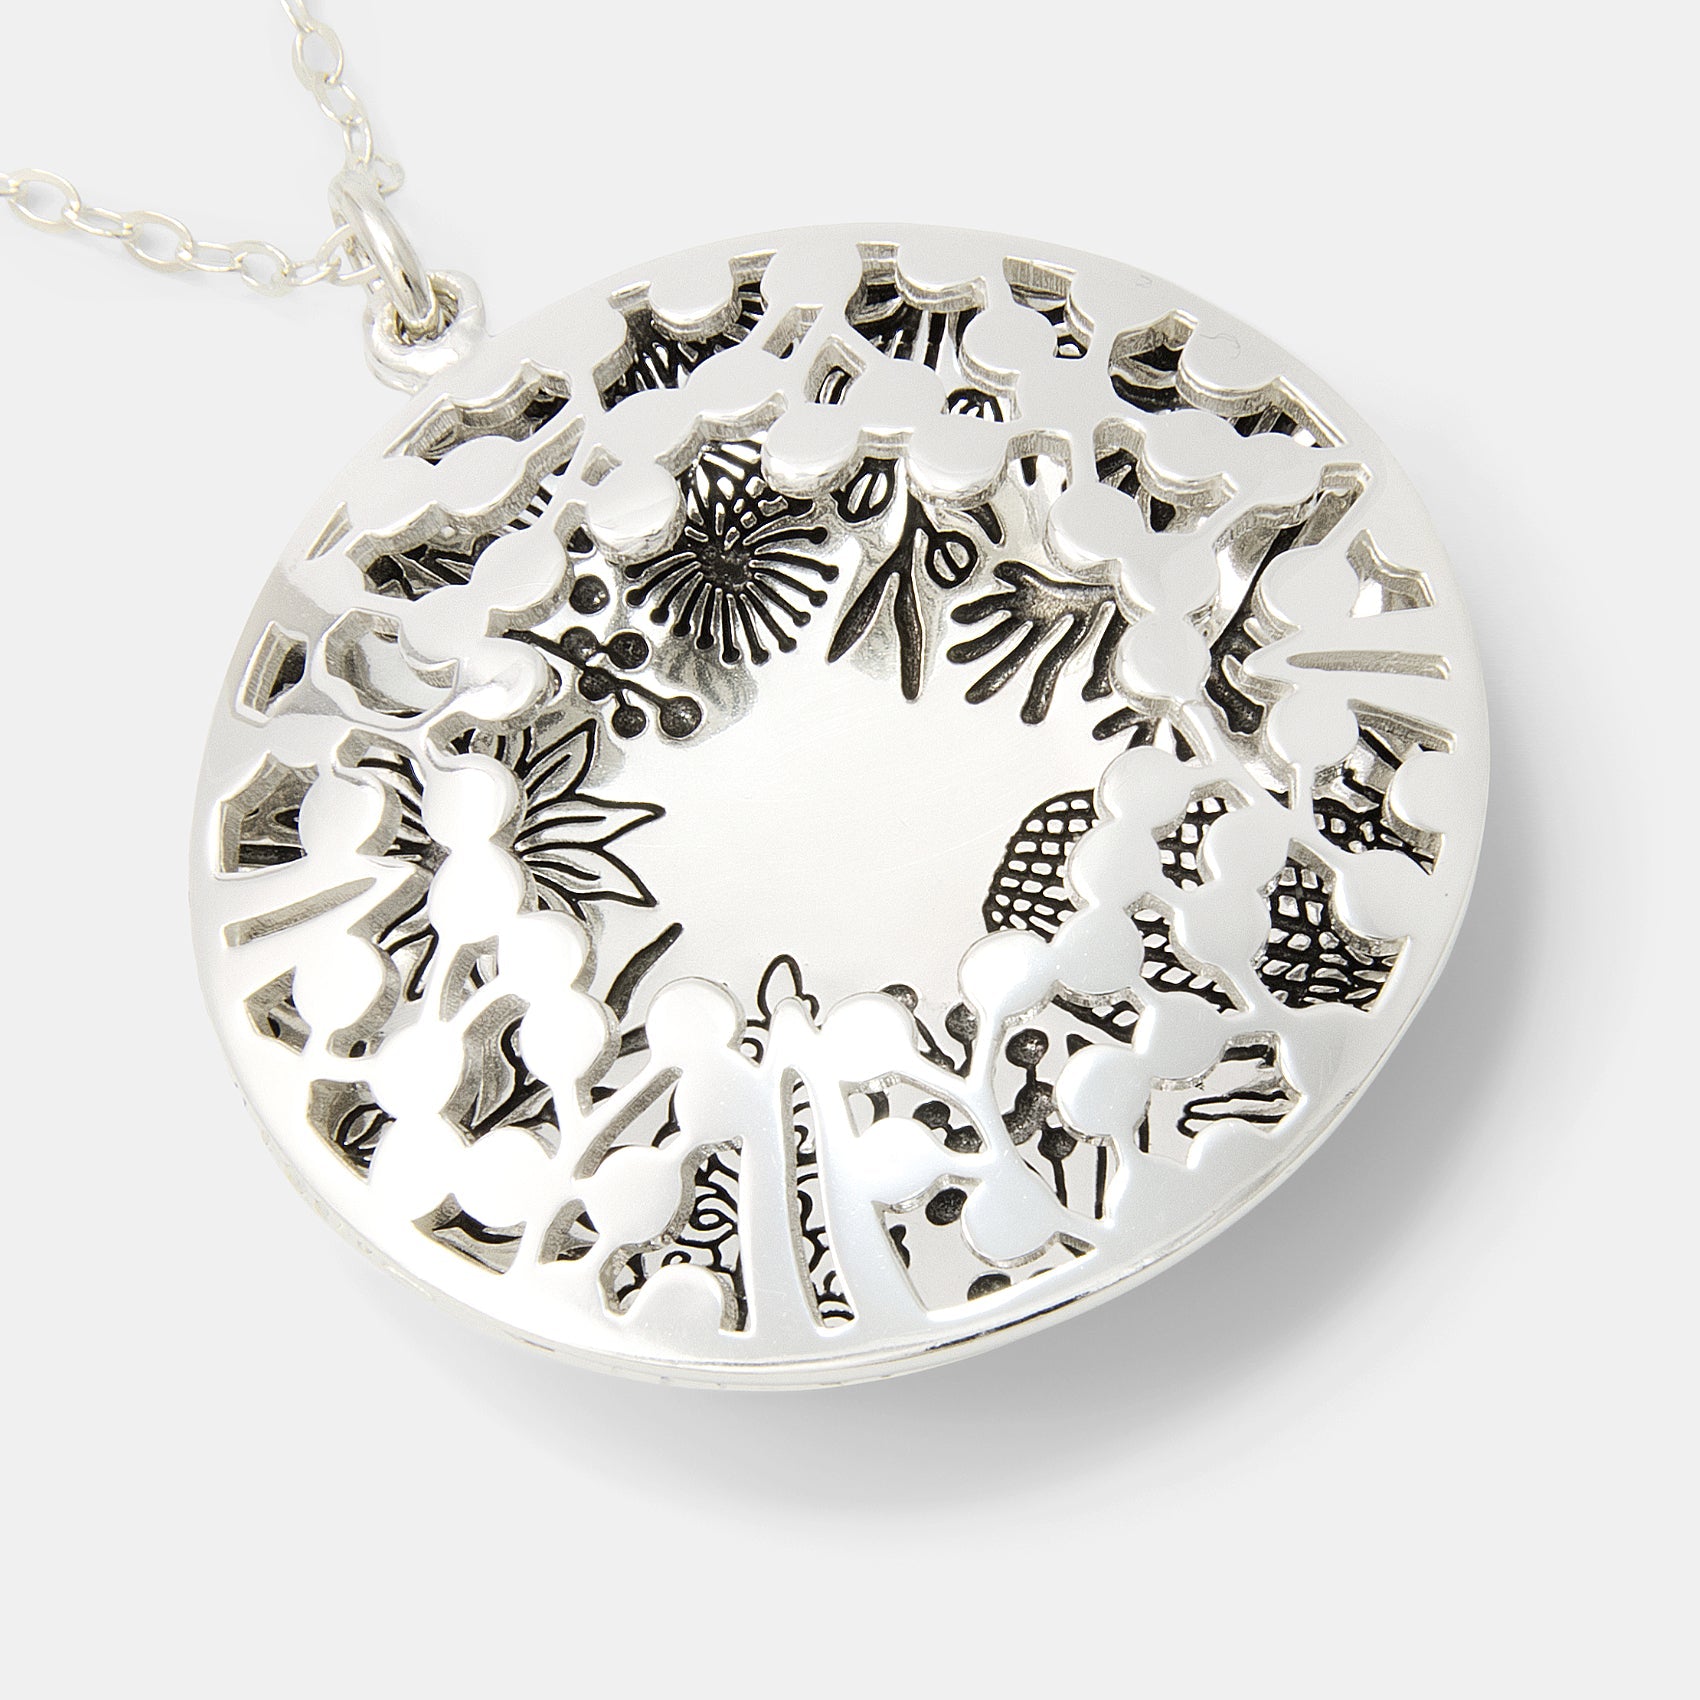 Flora Pattern Silver Open Locket - Simone Walsh Jewellery Australia